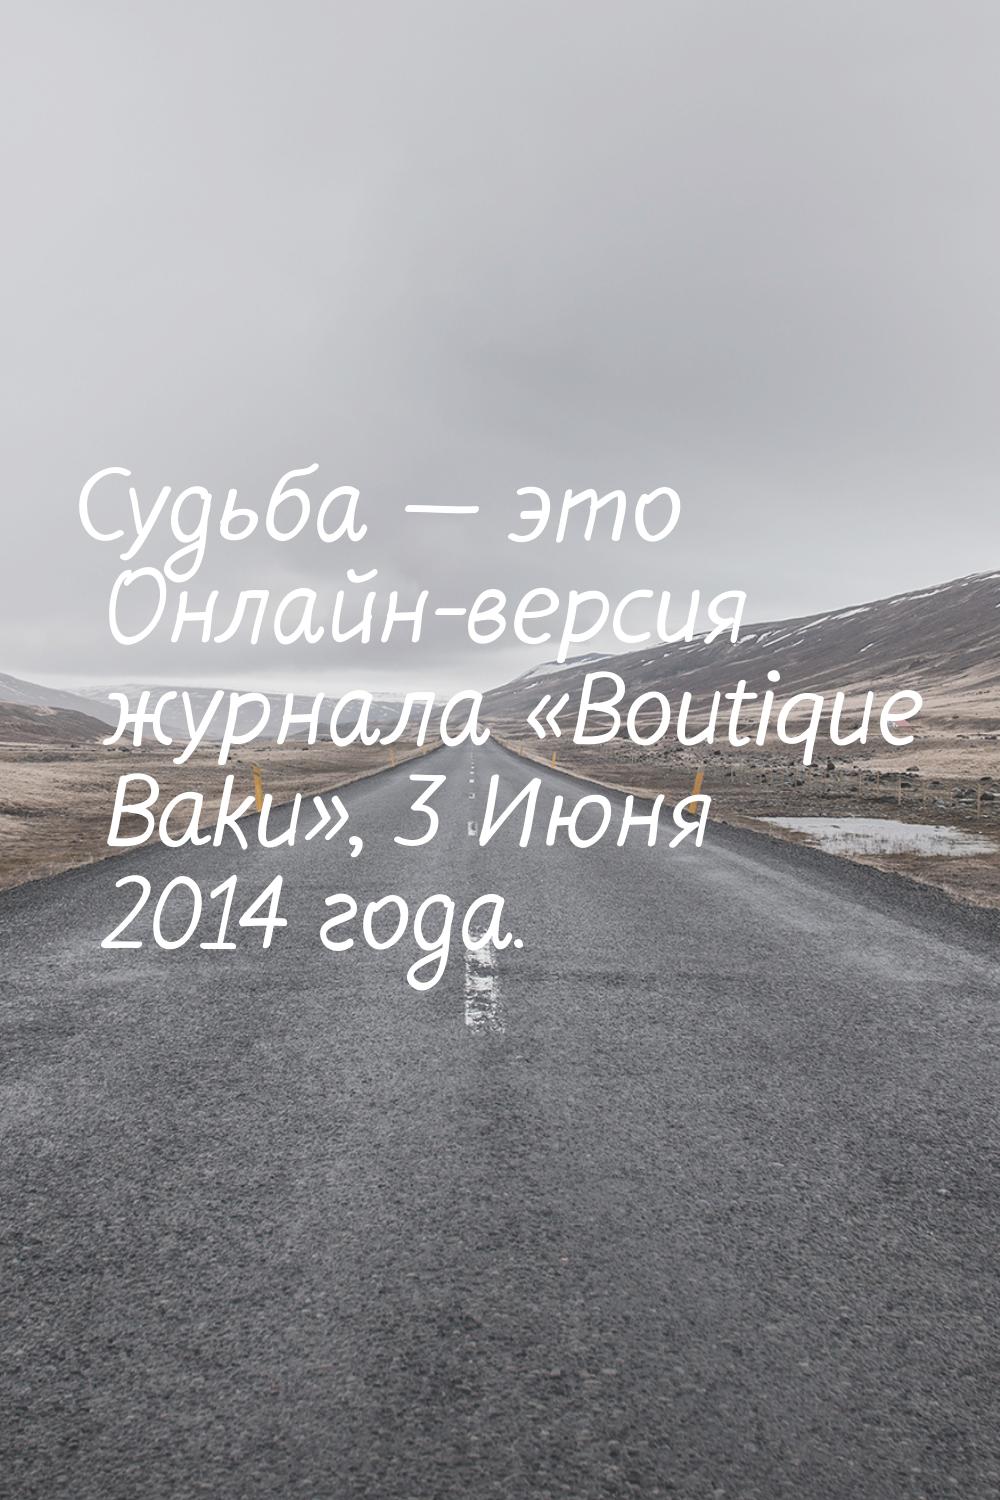 Судьба  это Онлайн-версия журнала «Boutique Baku», 3 Июня 2014 года.